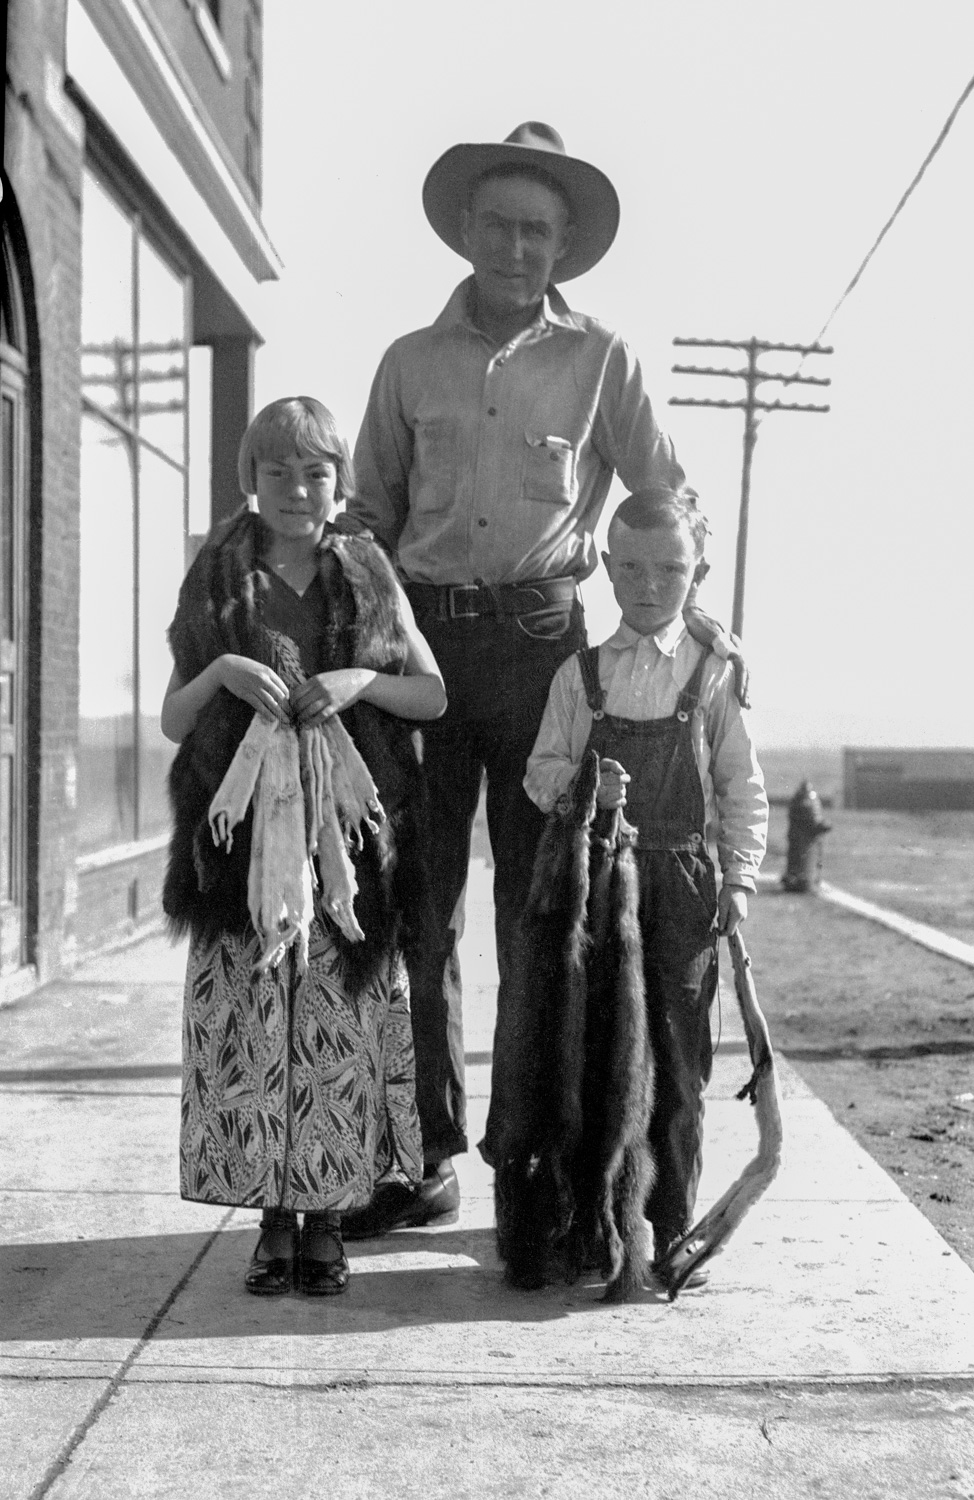 Cowboy with children, 1935